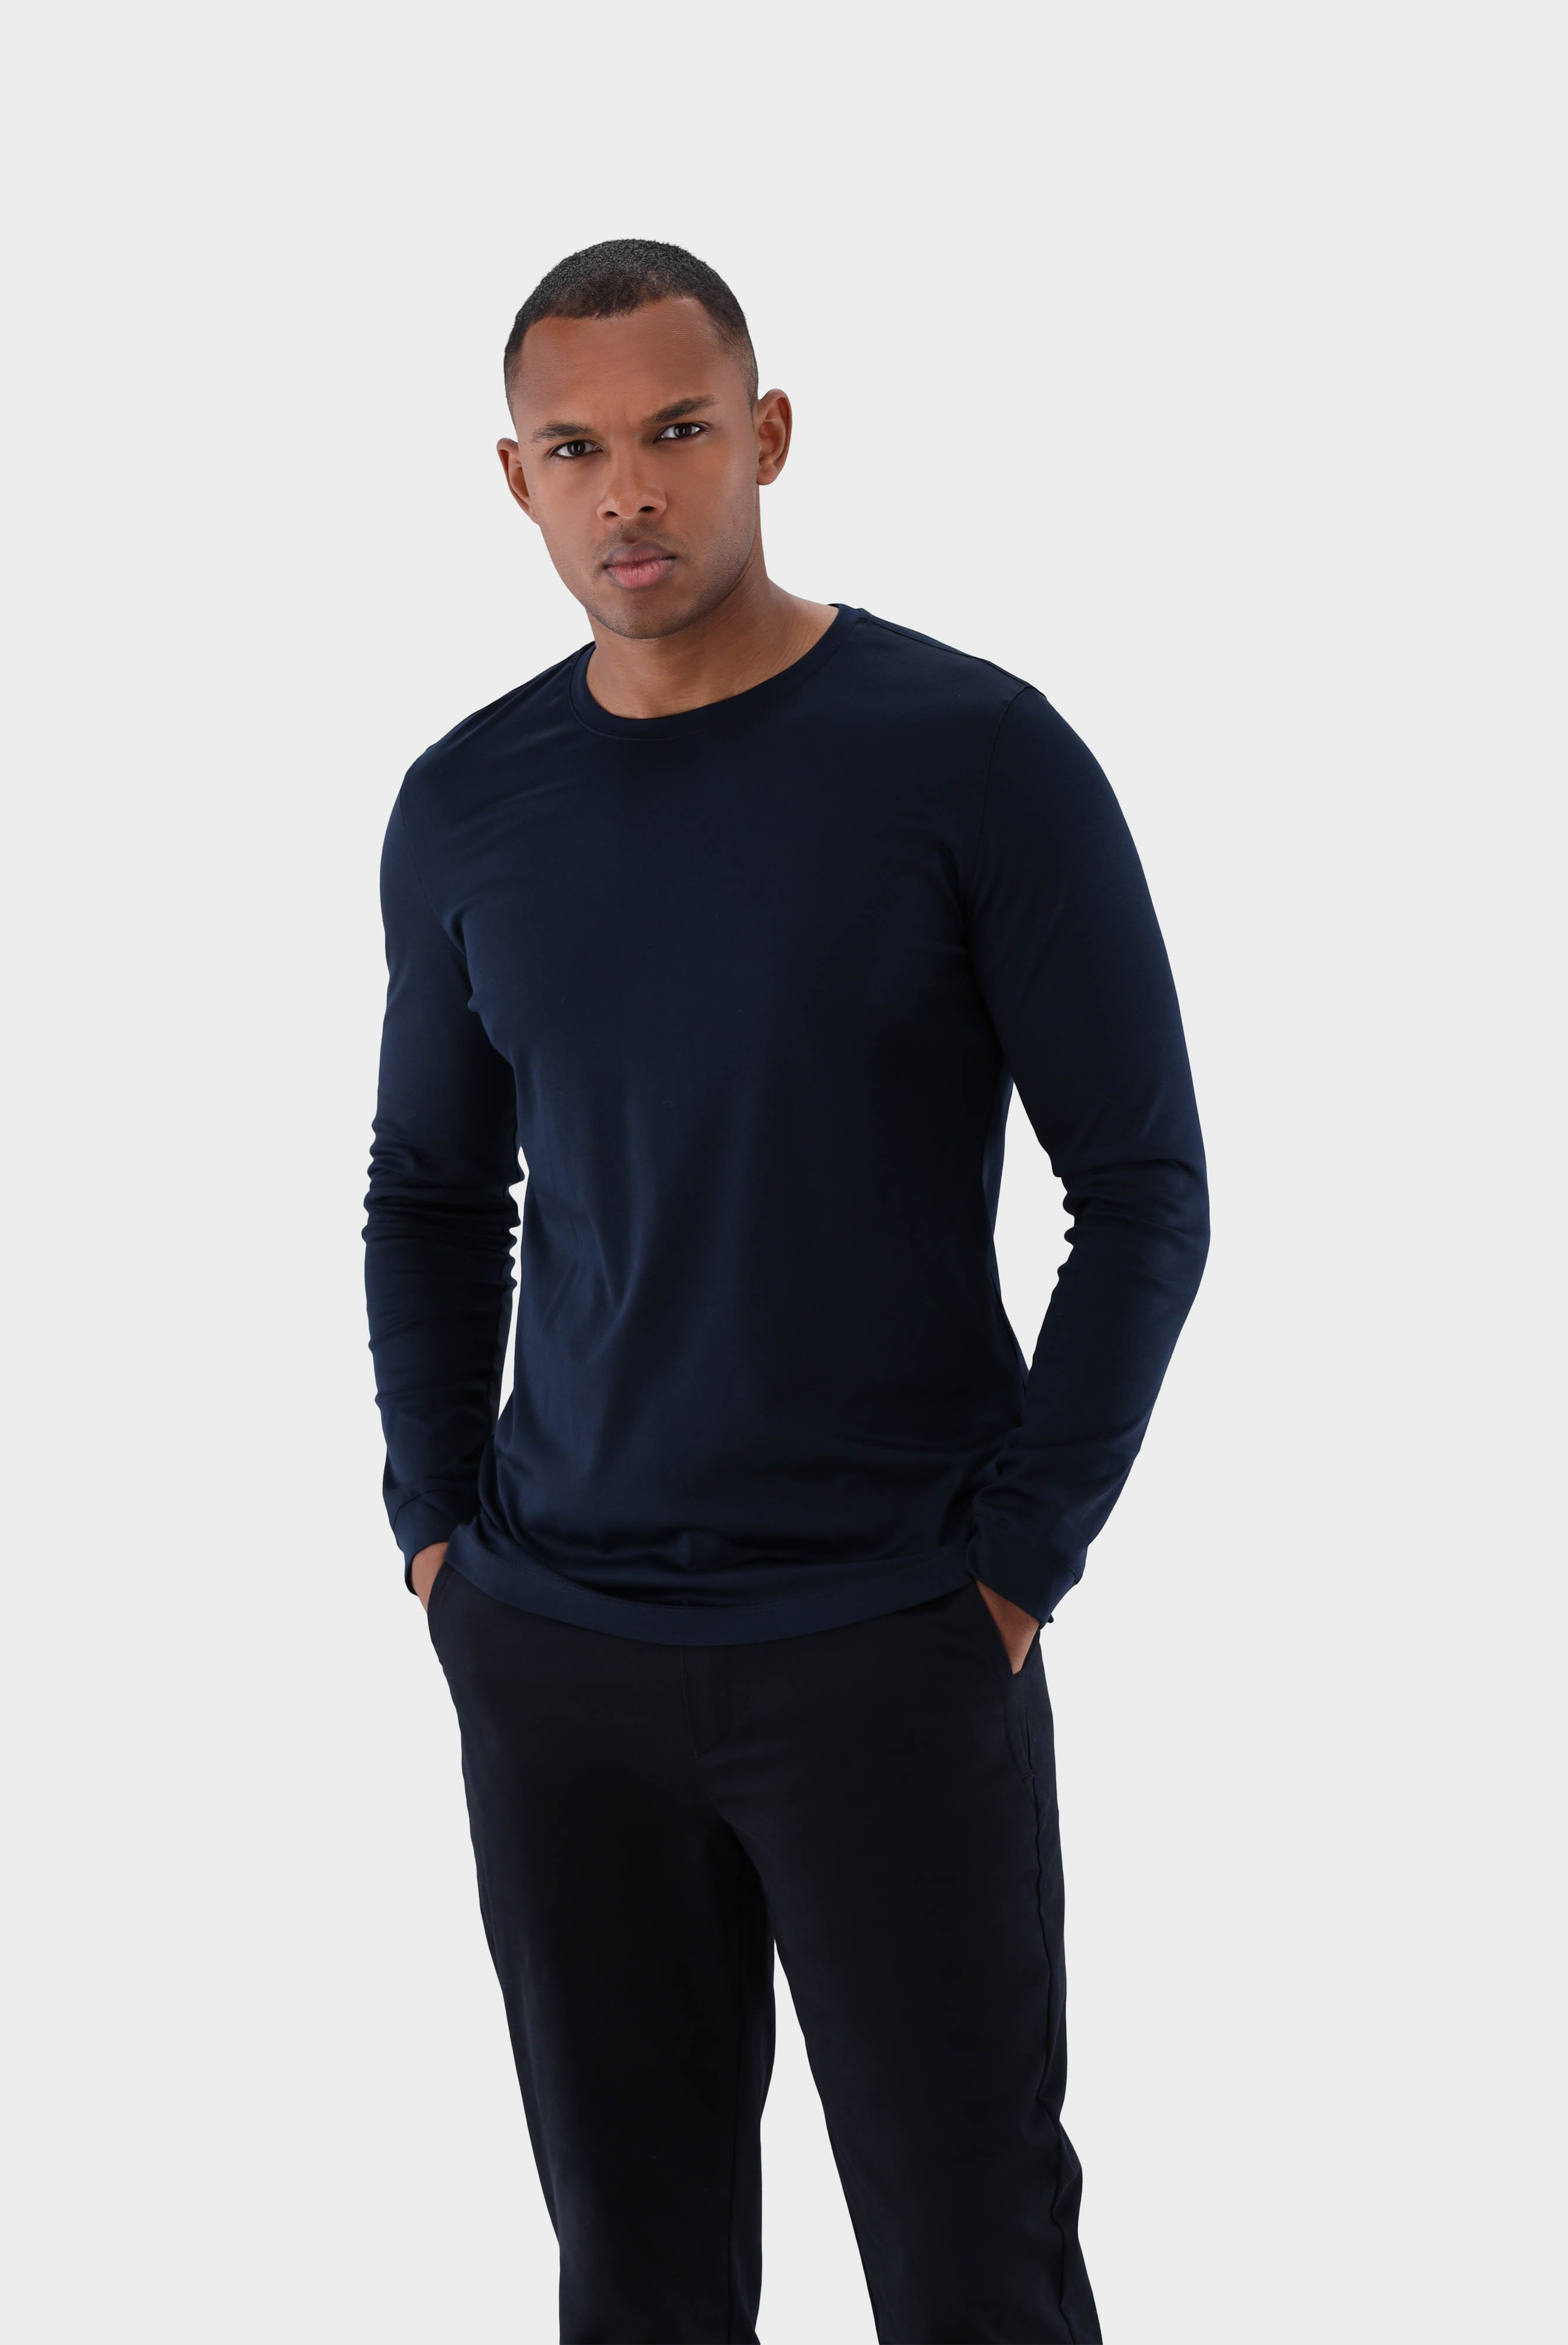 Langarm Jersey T-Shirt mit Rundhals Slim Fit